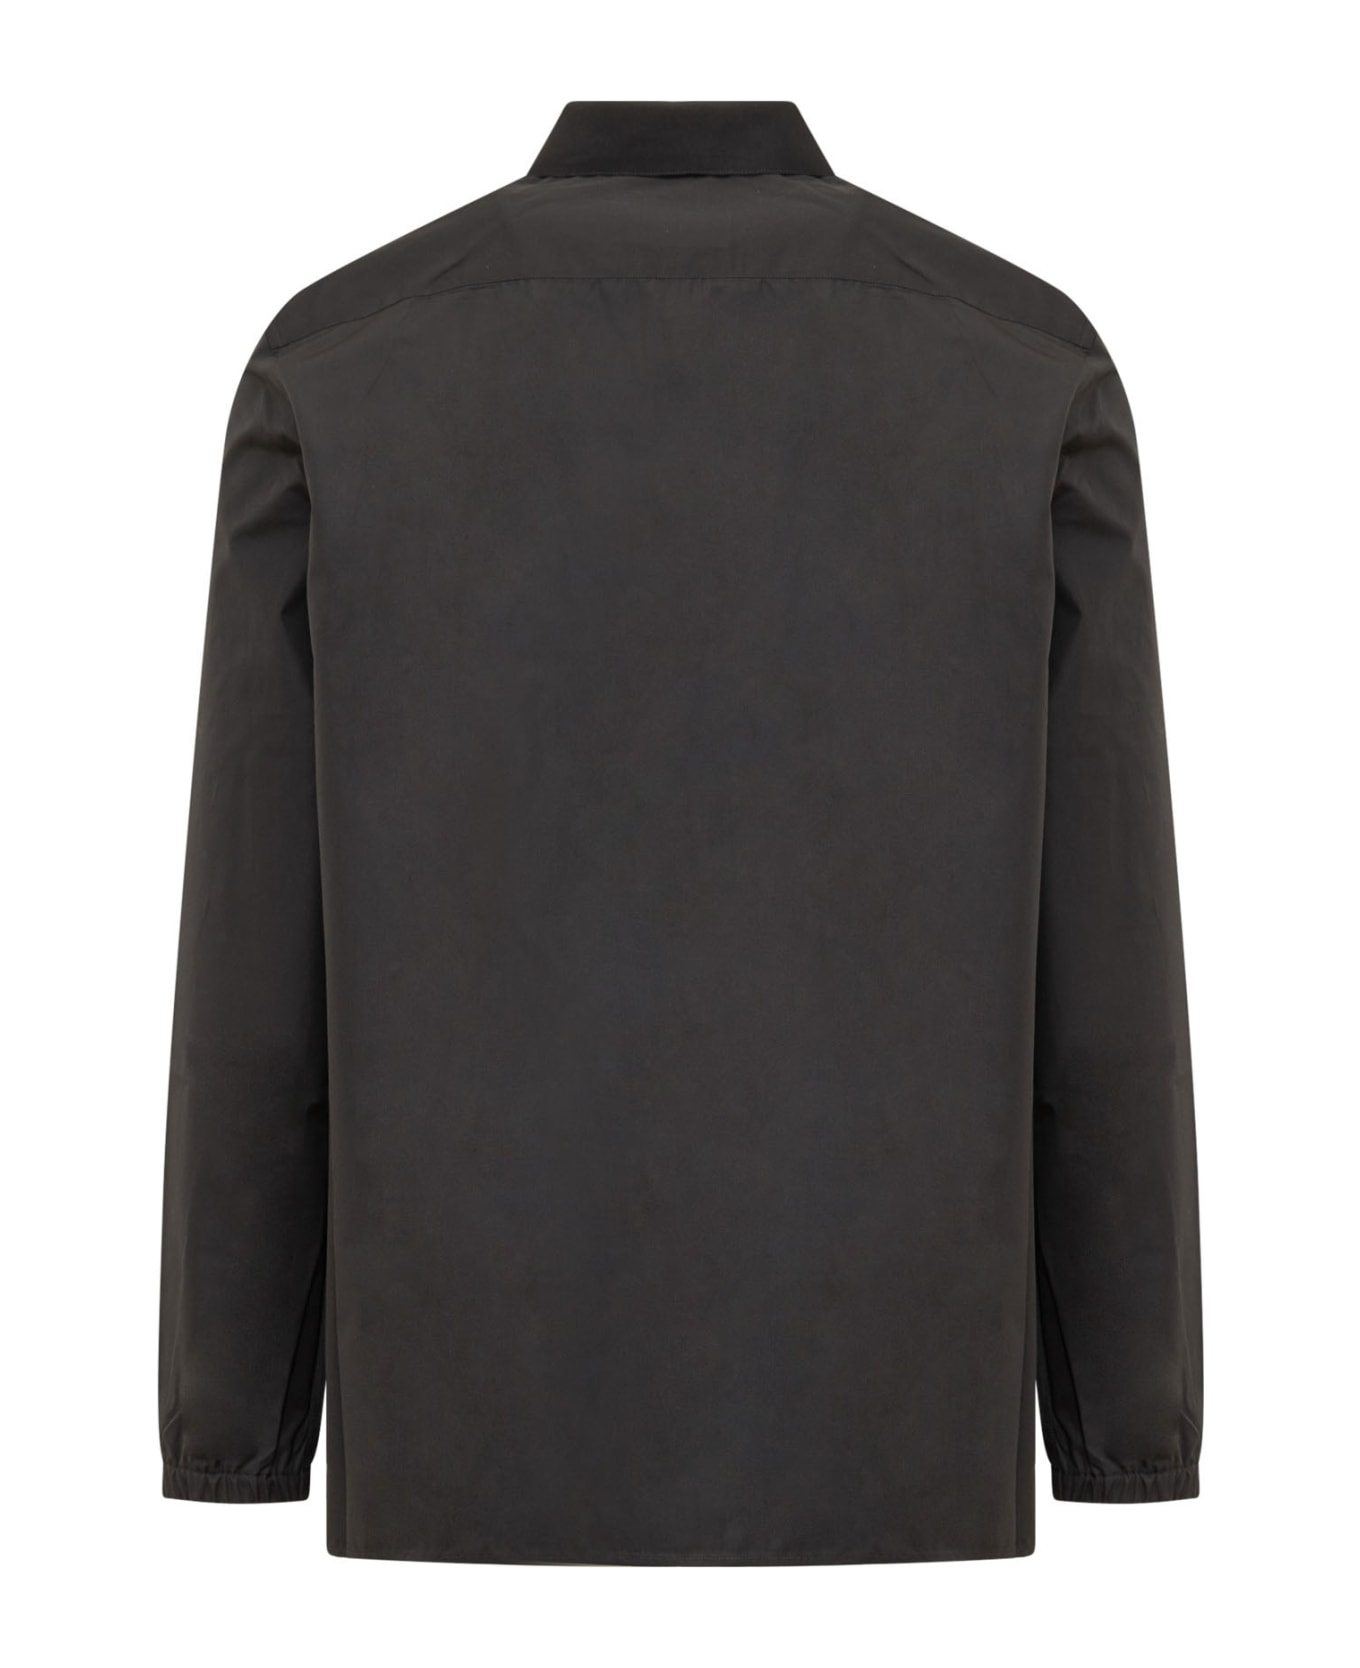 Givenchy Boxy Fit Long Sleeve Zip Print Shirt - BLACK シャツ